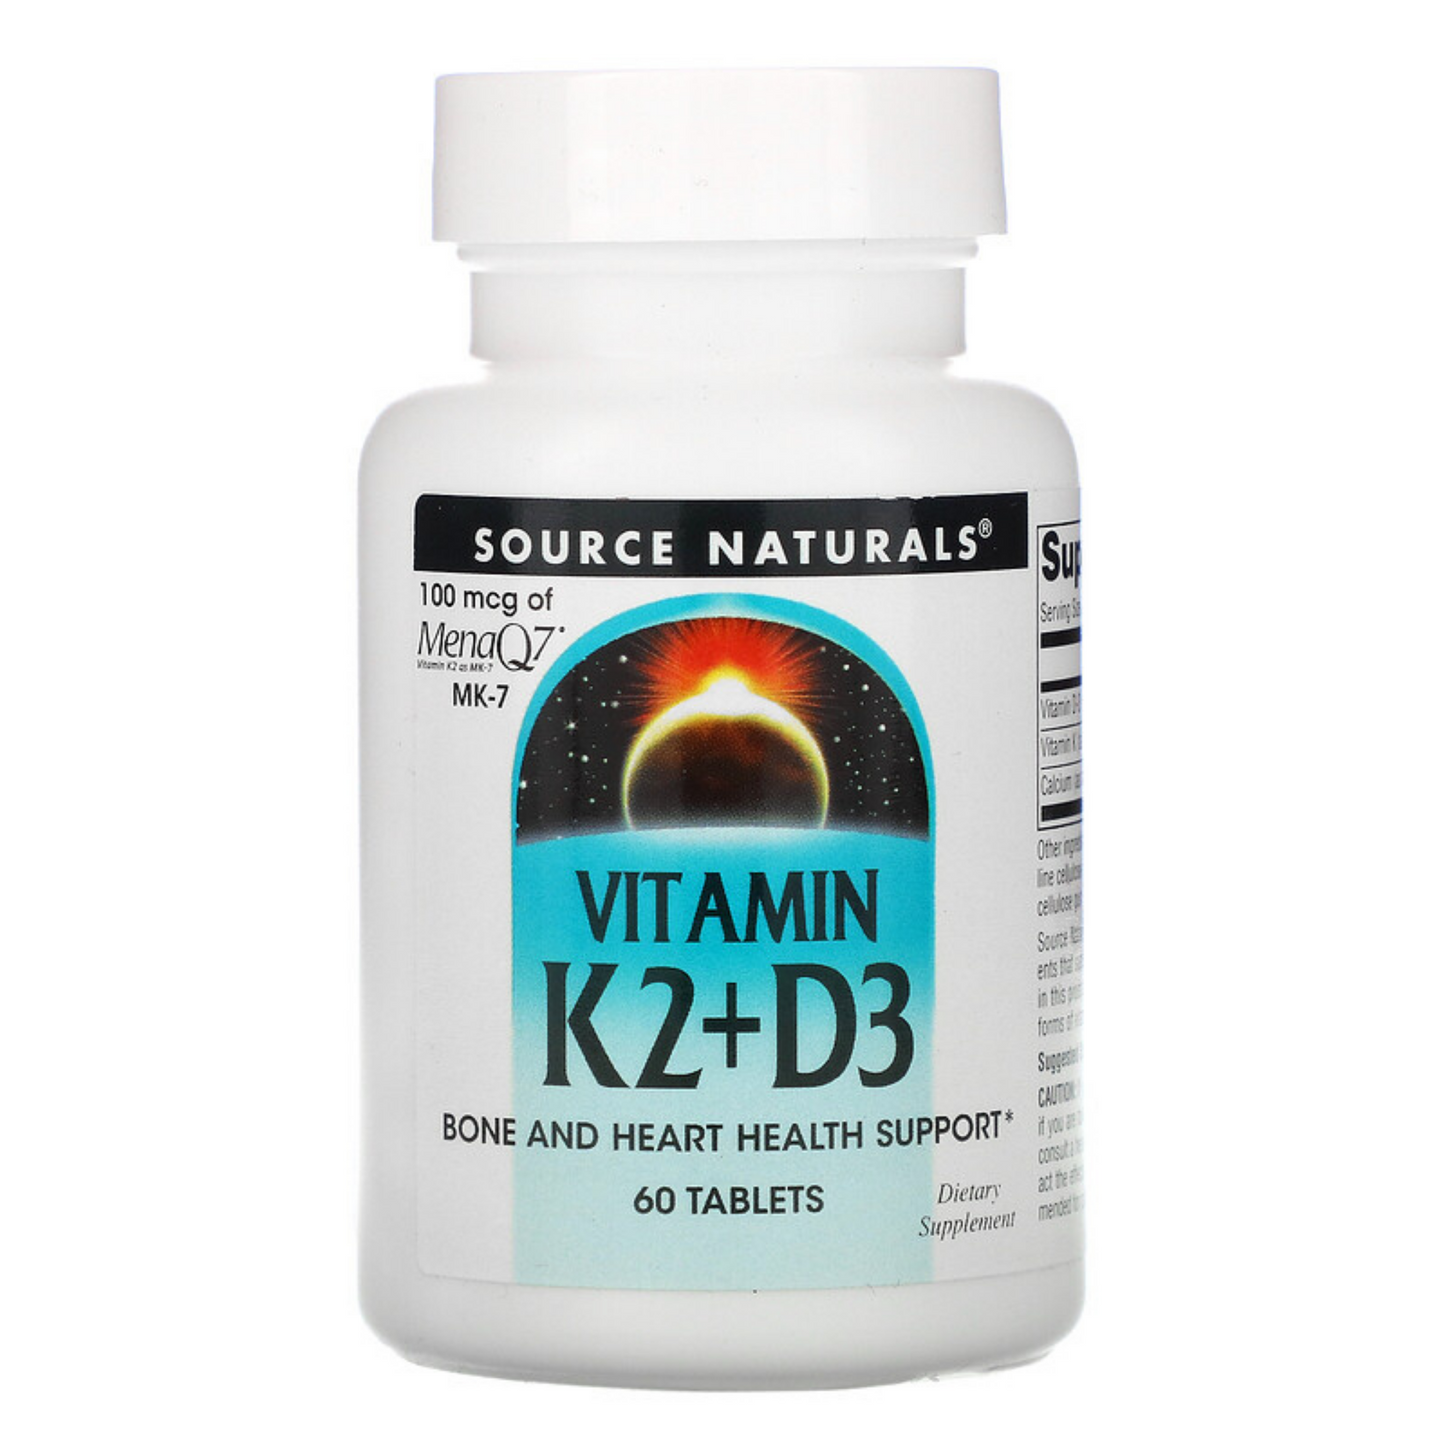 Primary image of Vitamin K2 + D3